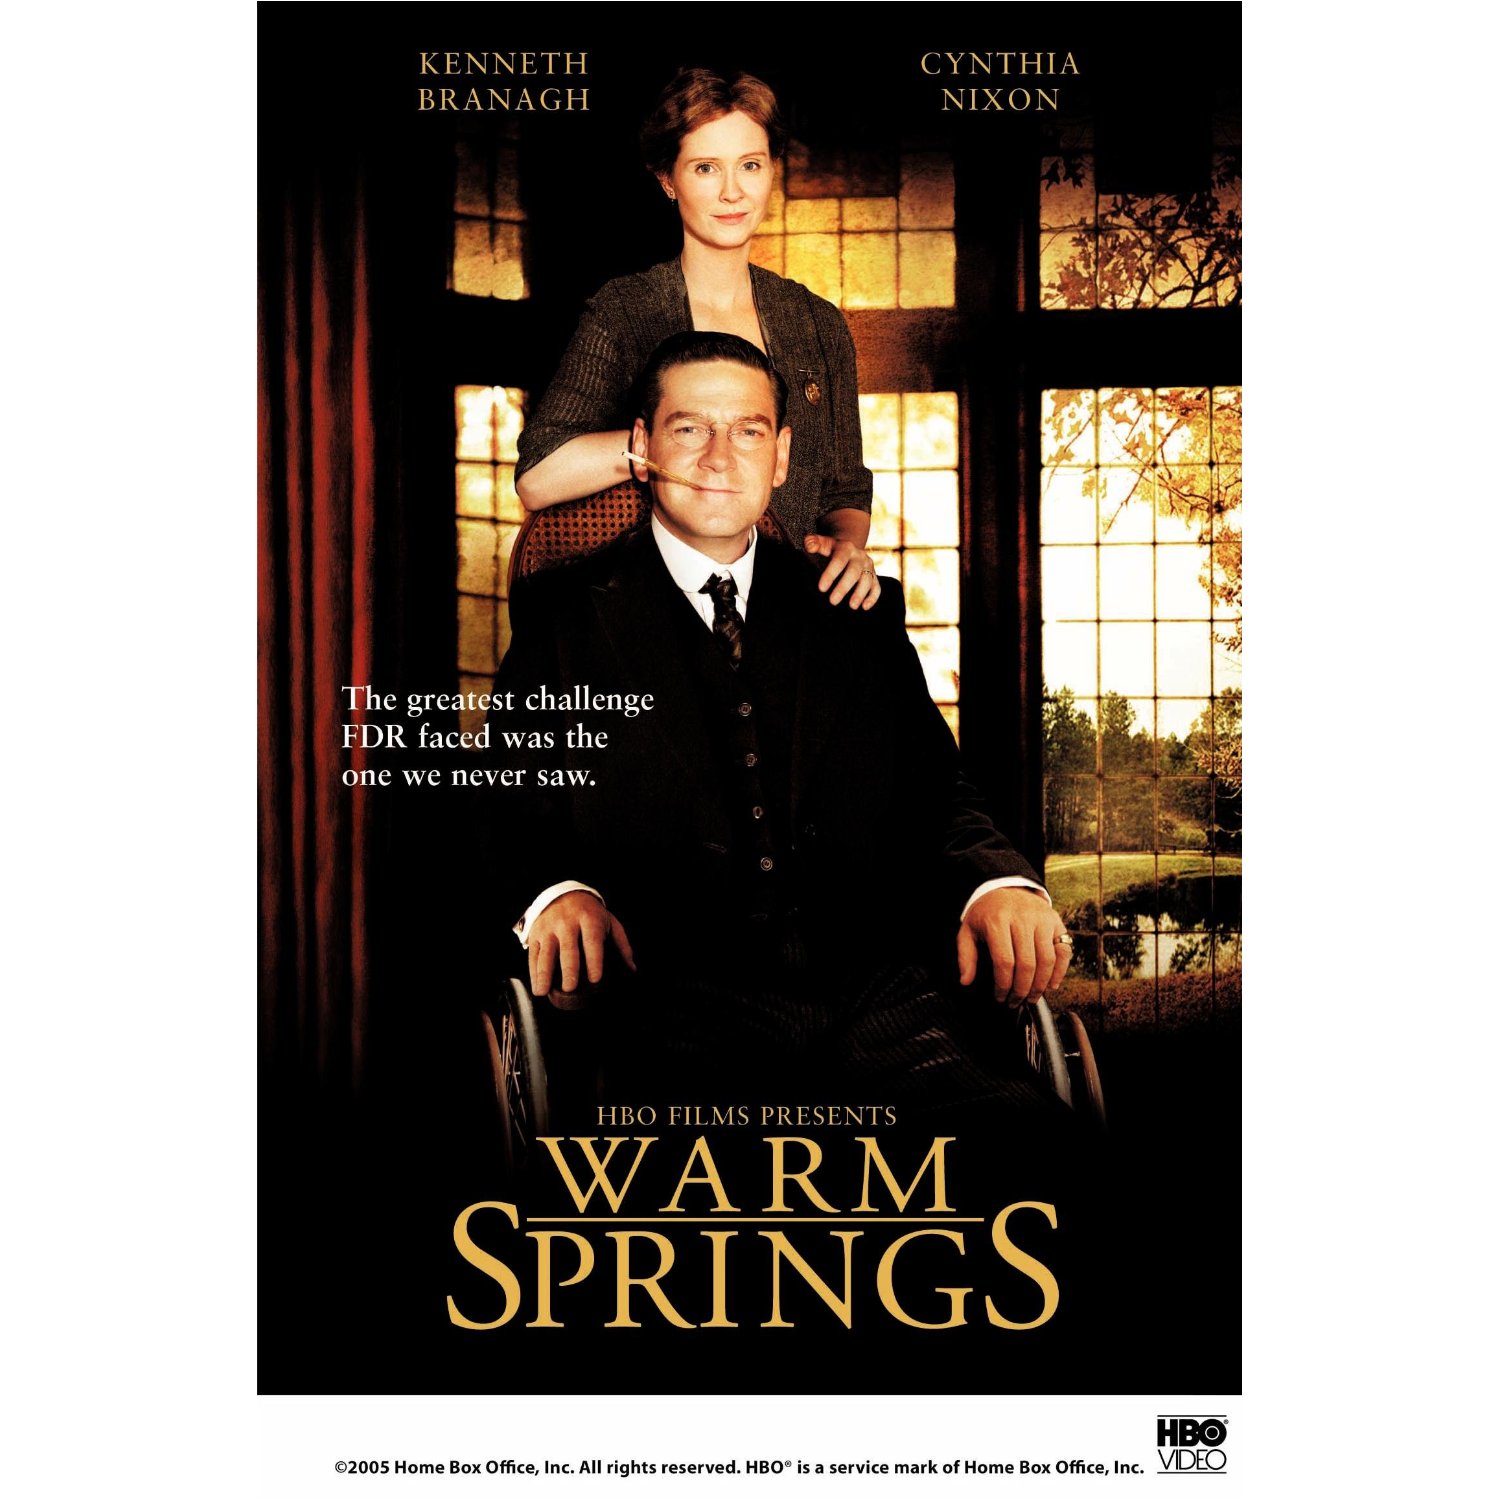 Warm Springs, movie starring Kenneth Branagh and Cynthia Nixon